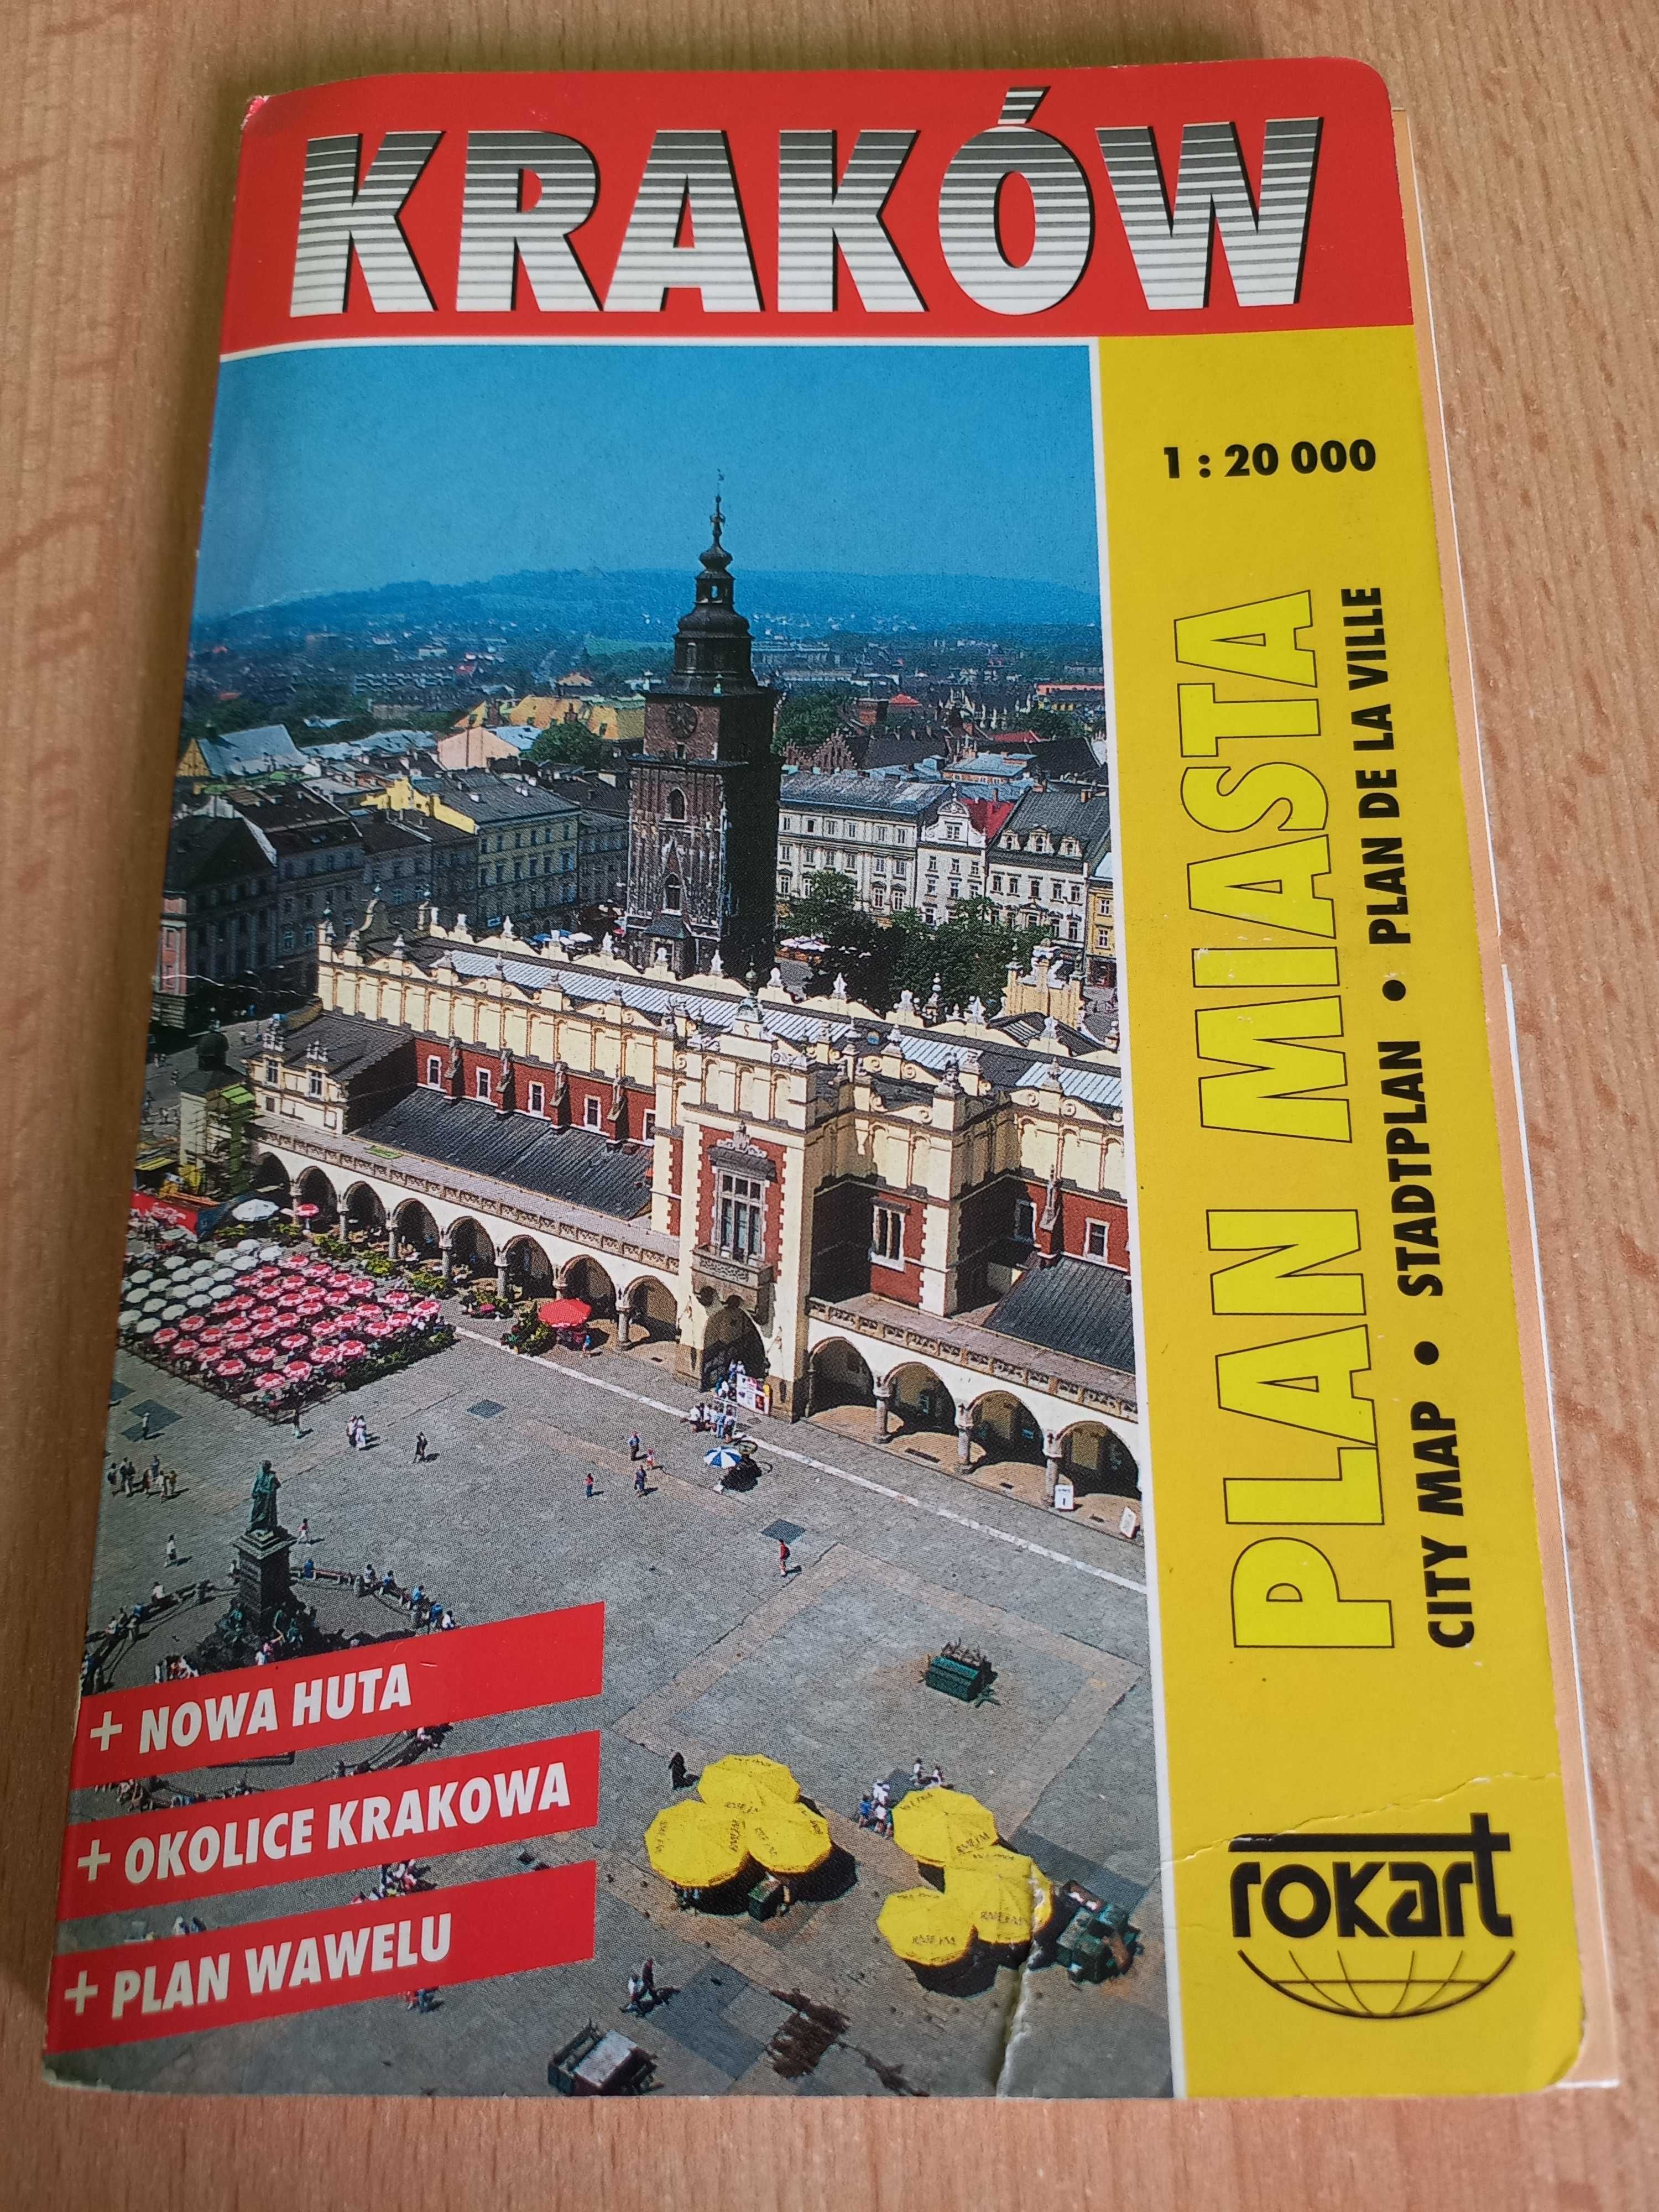 Kraków plan miasta Nowa huta okolice Krakowa plan Wawelu